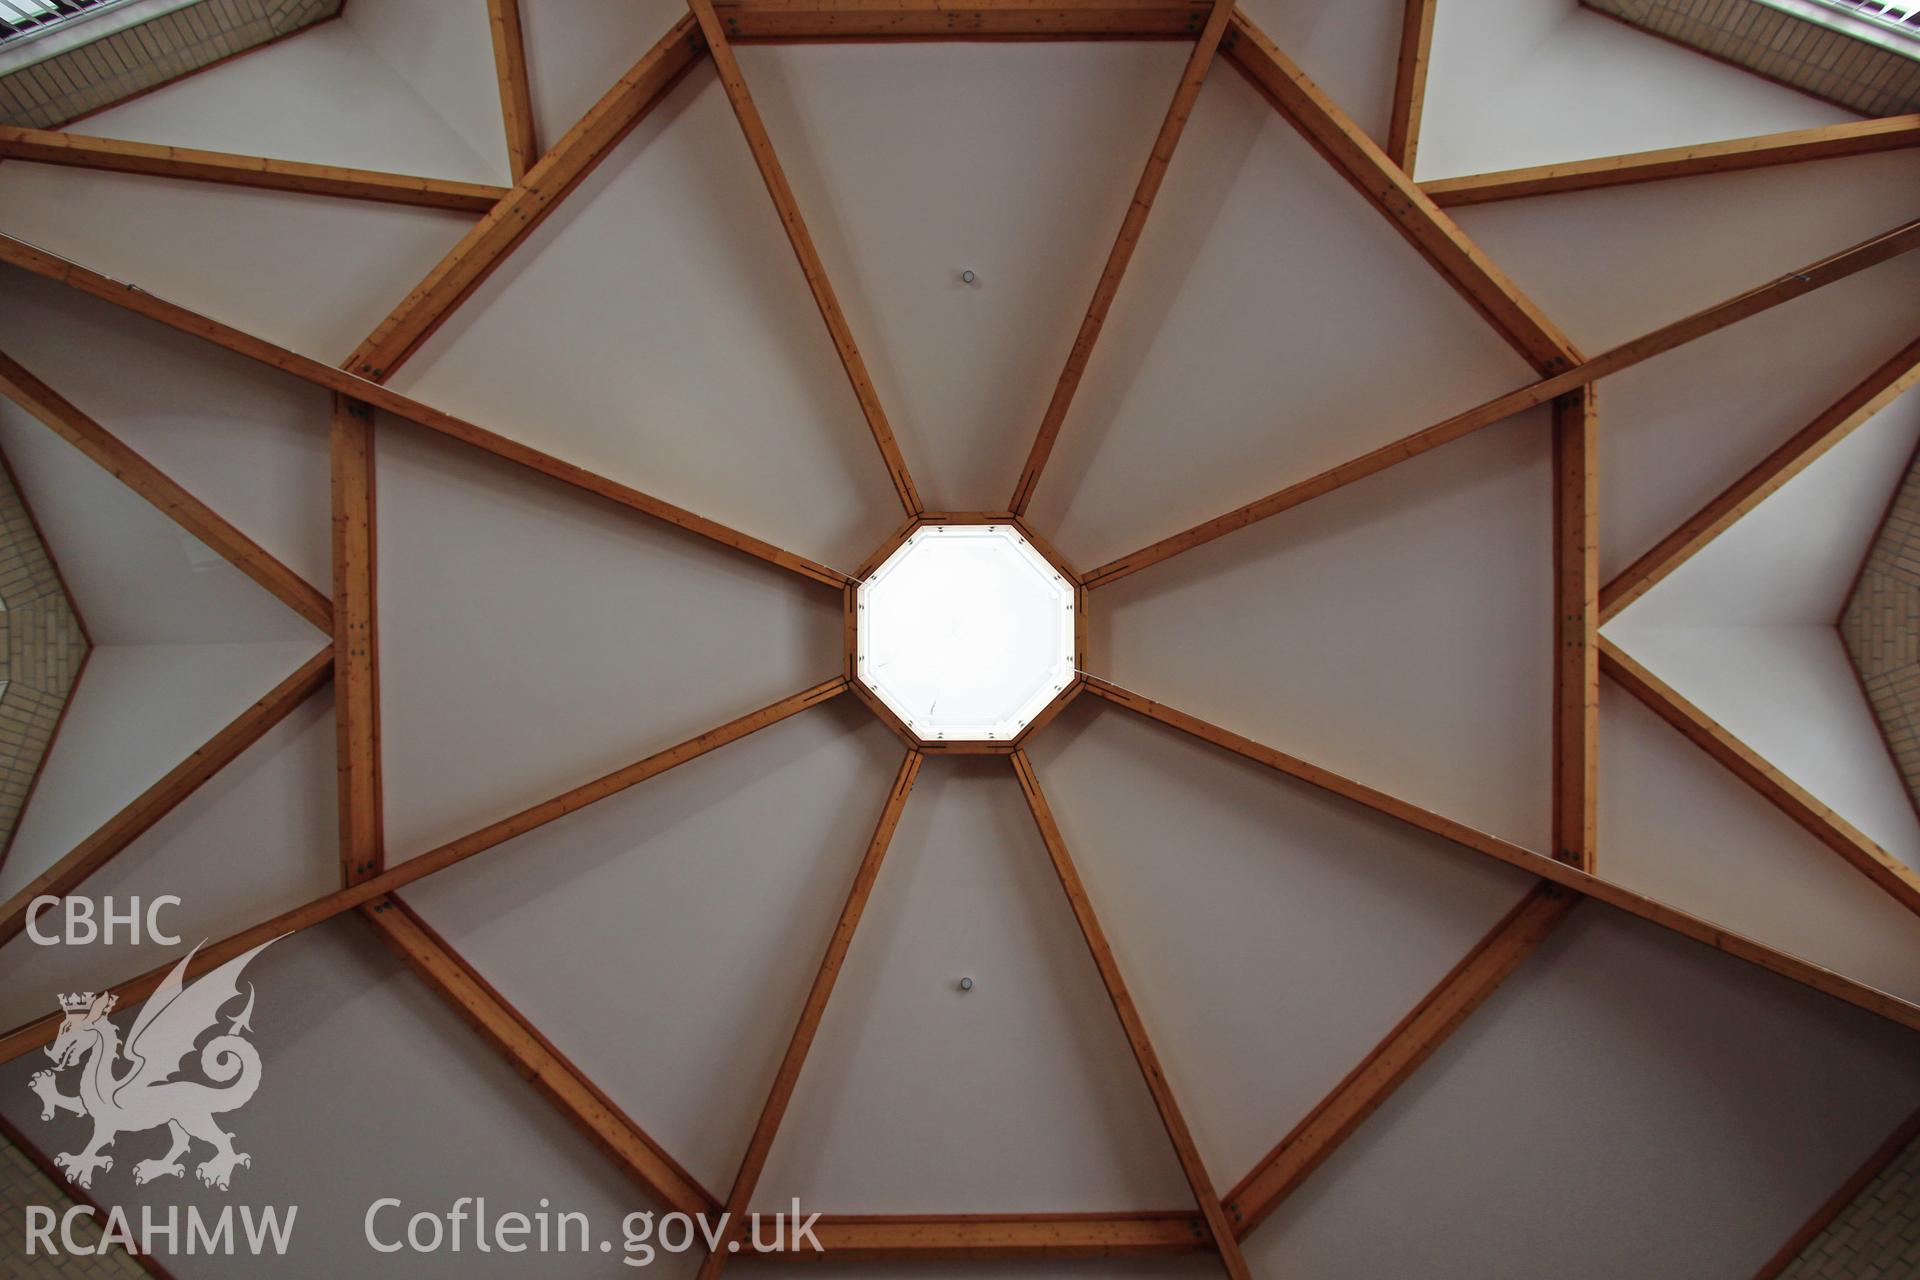 Manselton URC Chapel, Swansea, detail of roof